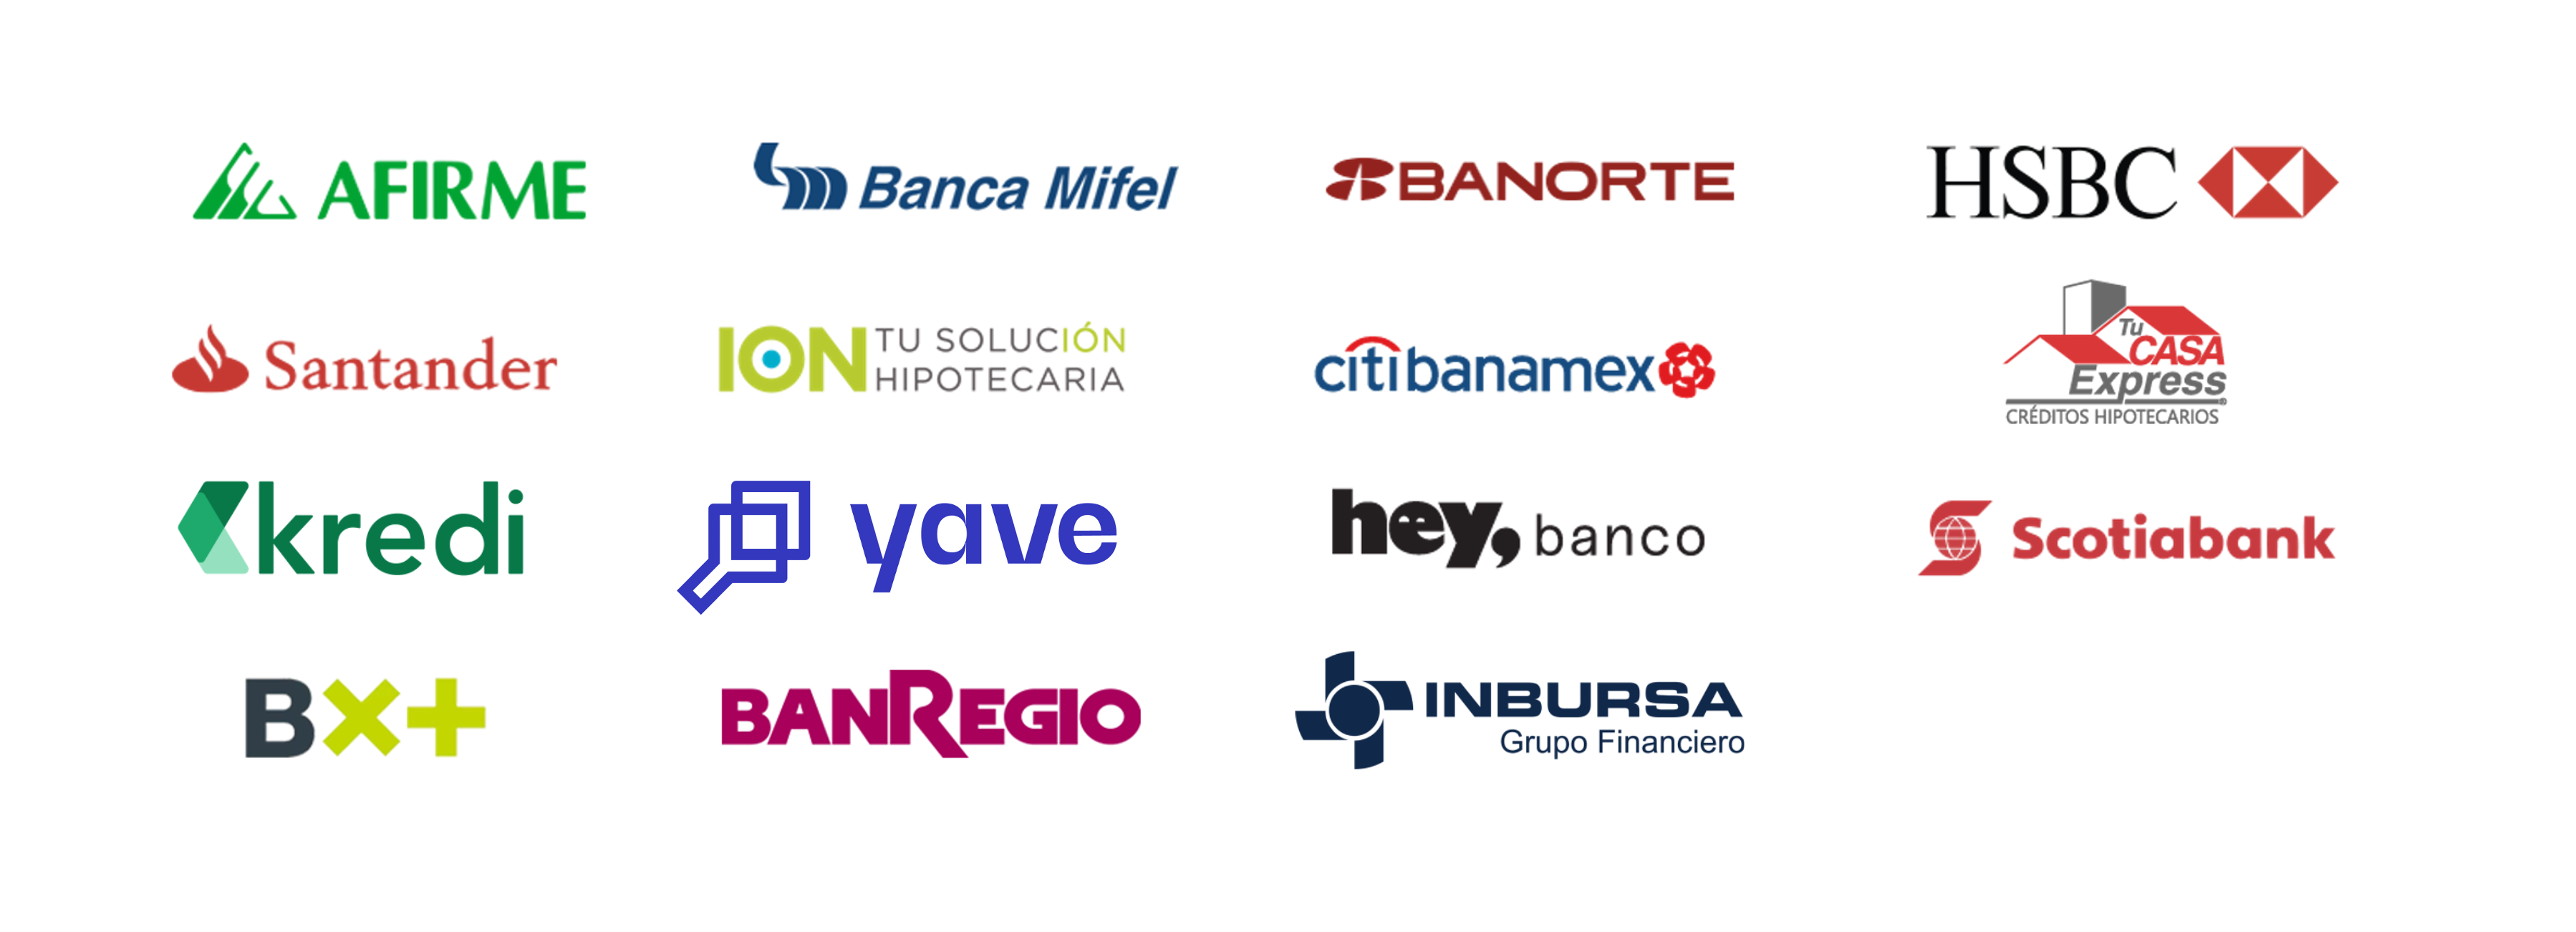 Bancos hipotecarios en ciudad de mexico